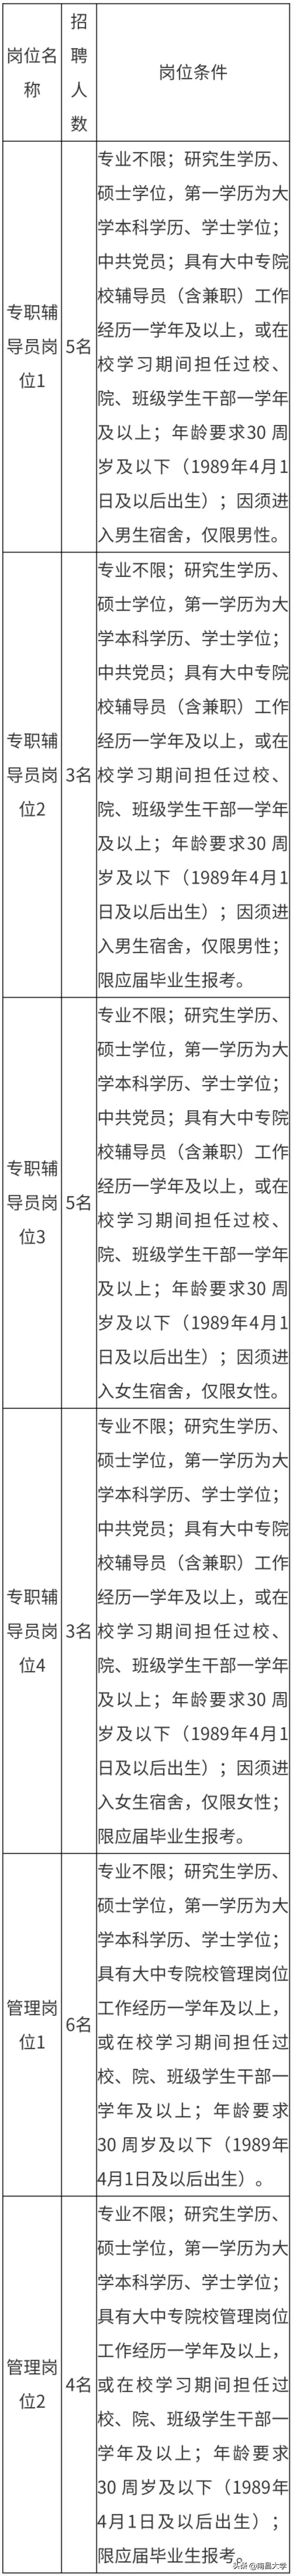 南昌大学公开招聘16名专职辅导员和10名管理岗位人员